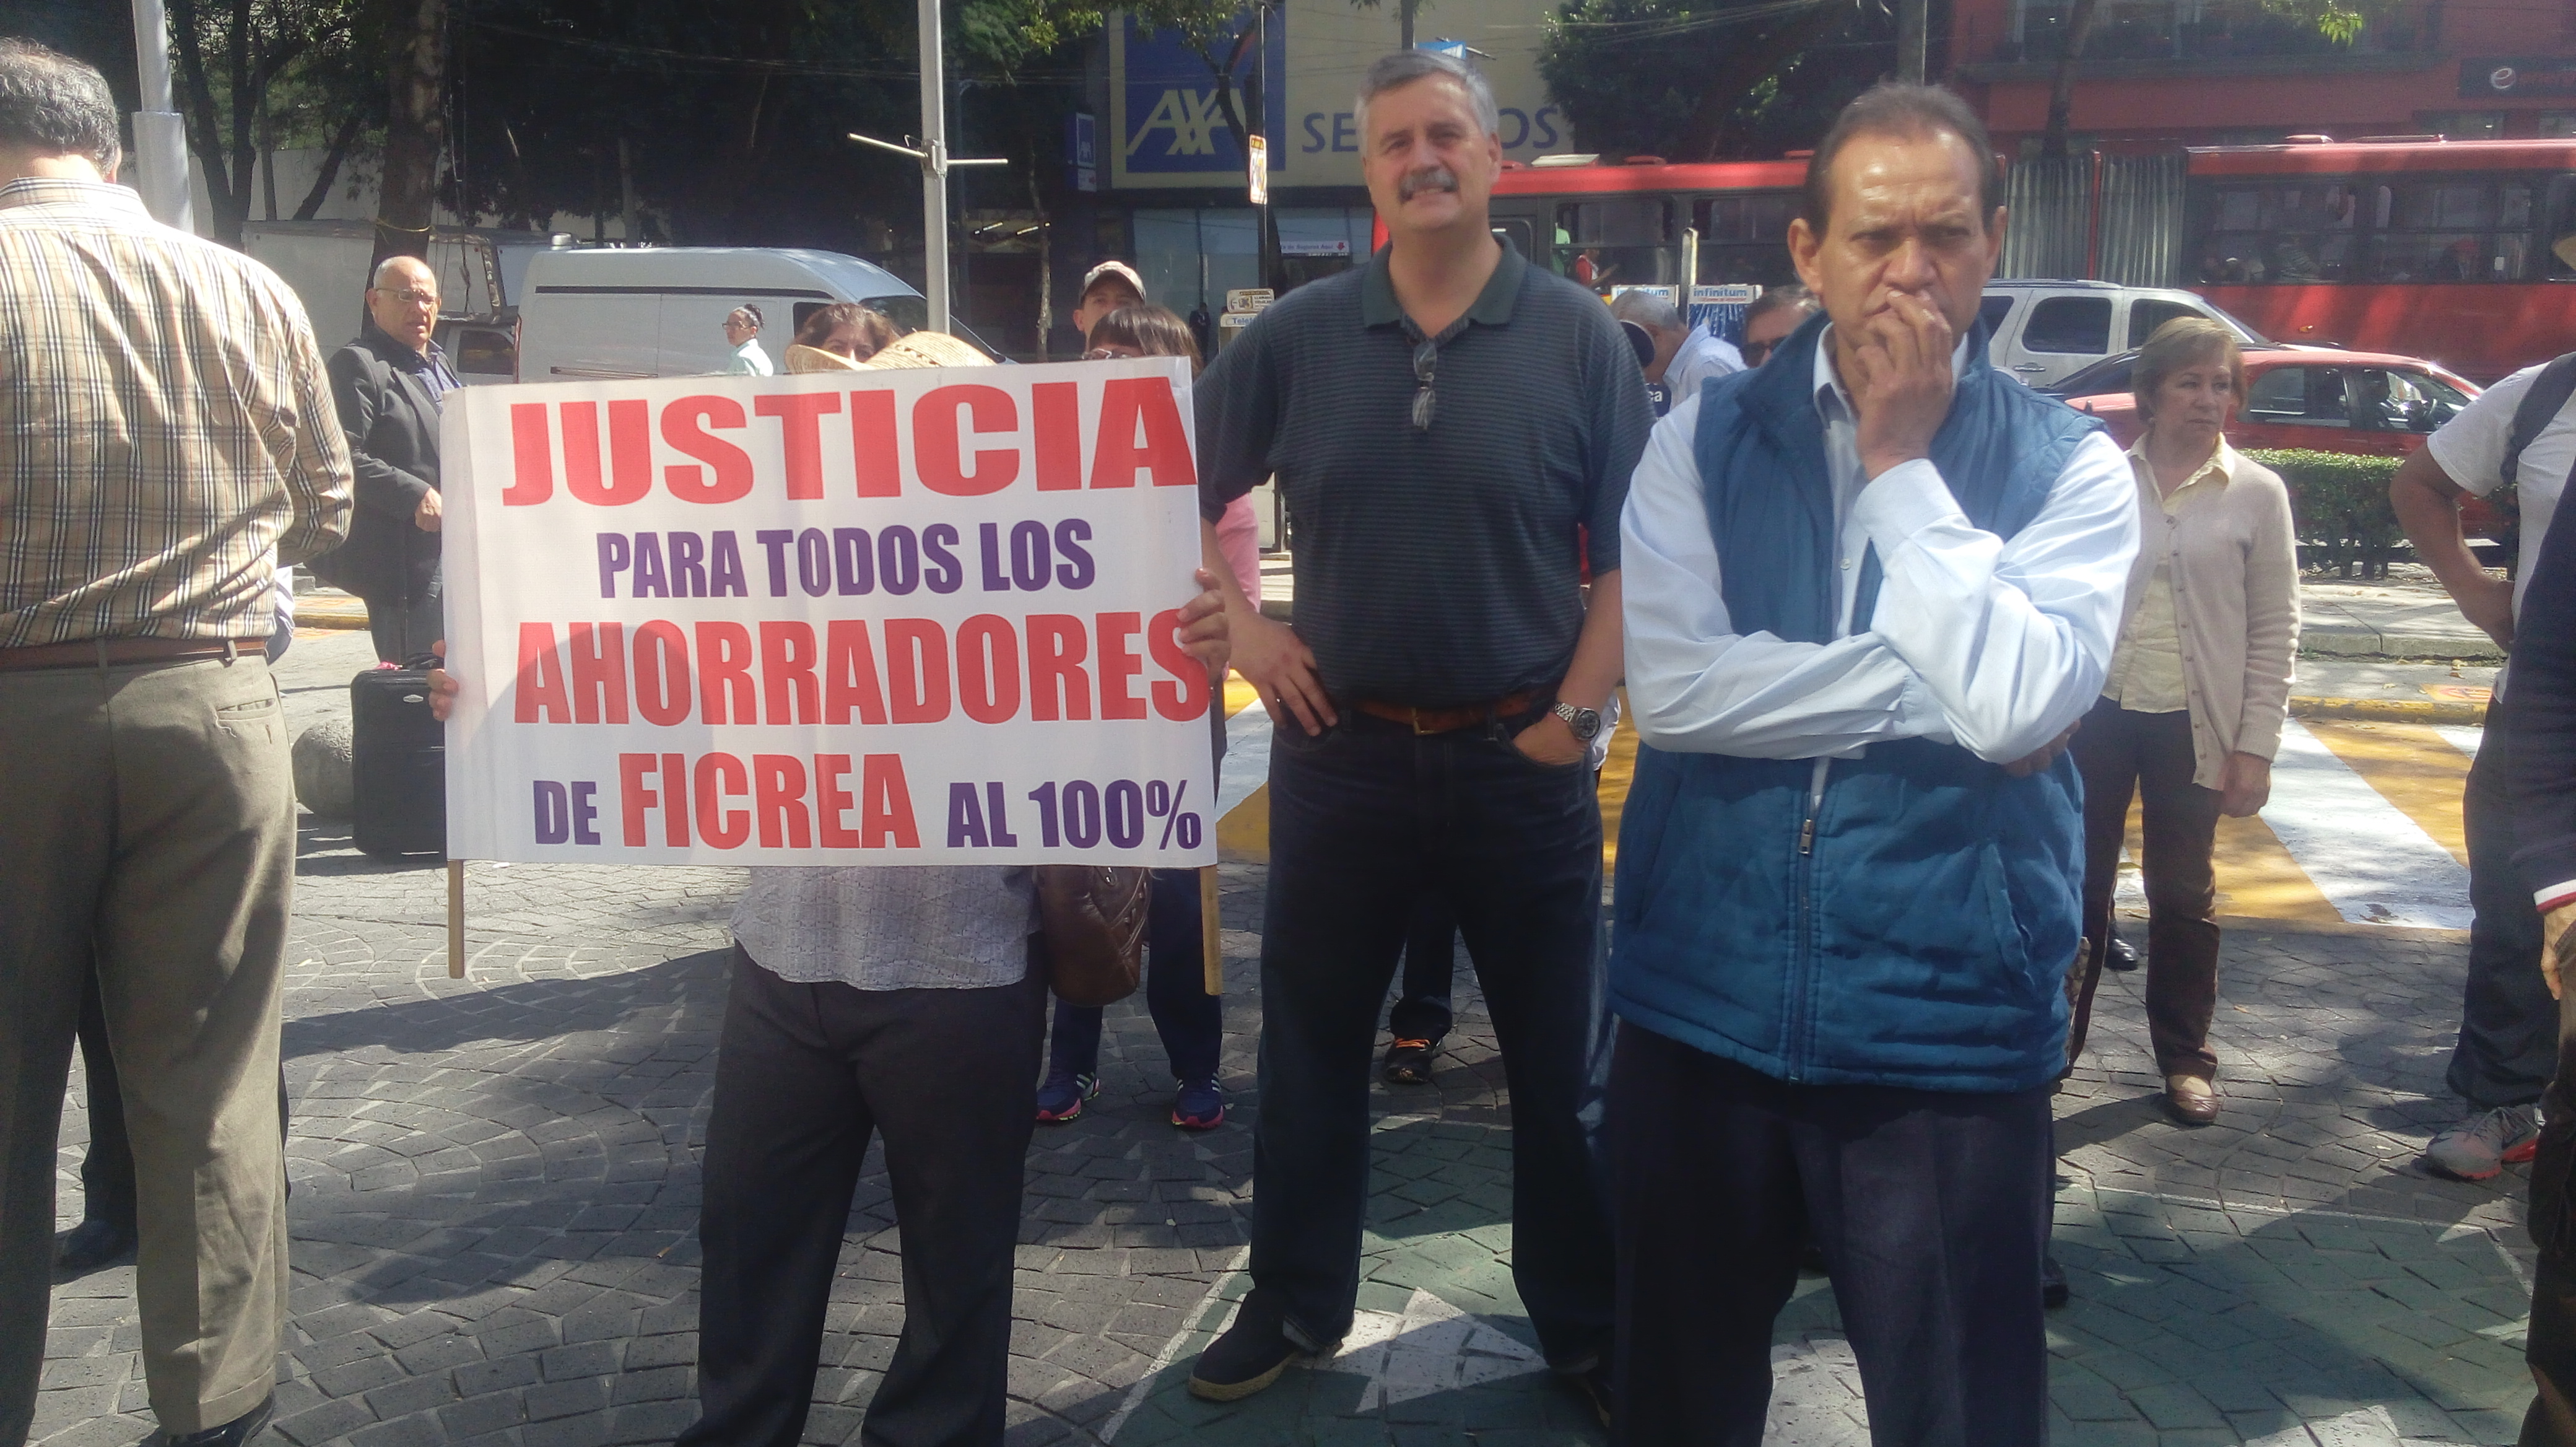 Protestan ahorradores a dos años de fraude de Ficrea